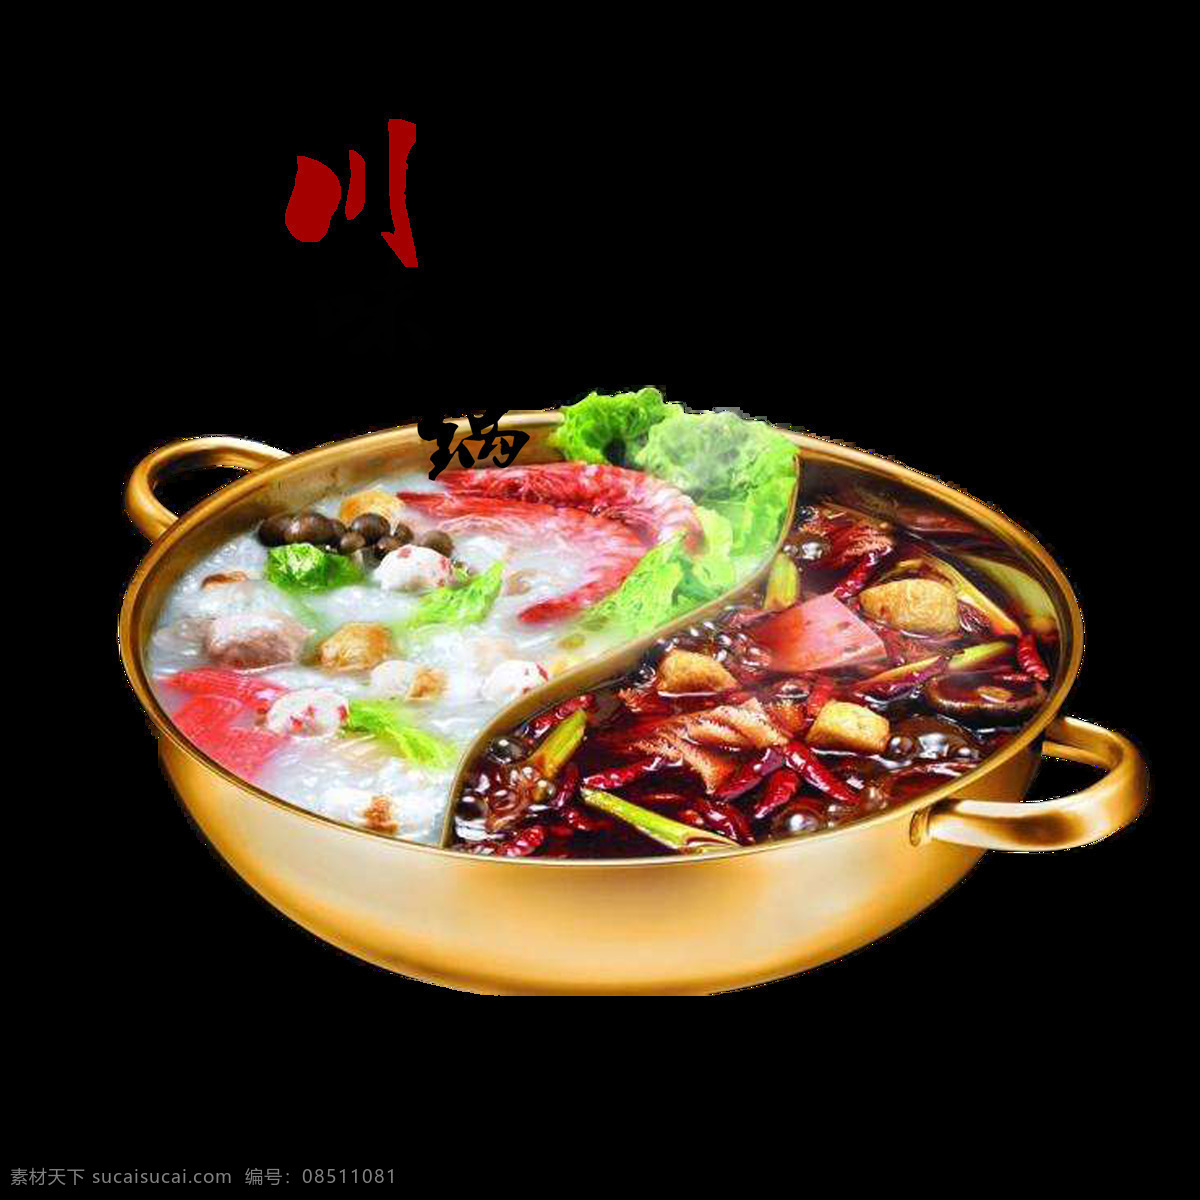 川味 美食 鸳鸯 锅 火锅 元素 火锅元素 肉类 蔬菜 鸳鸯锅 中文